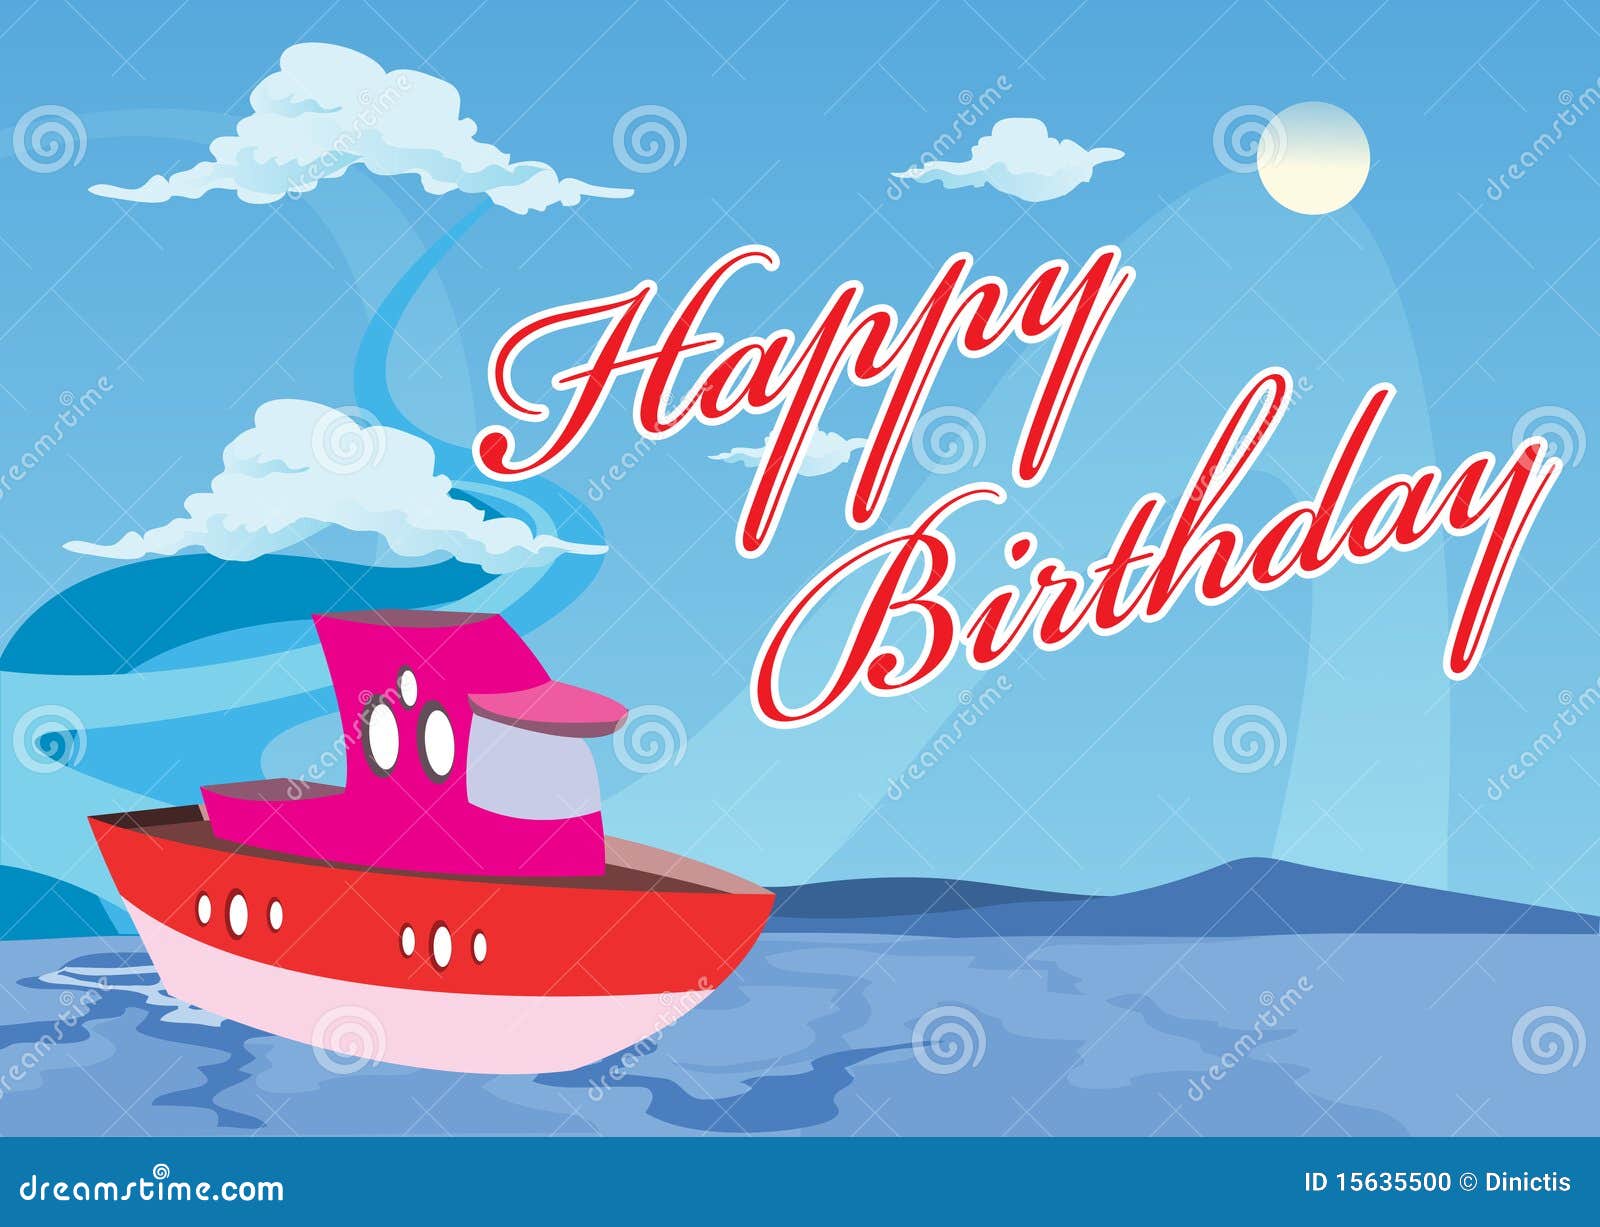 happy-birthday-boat-15635500.jpg